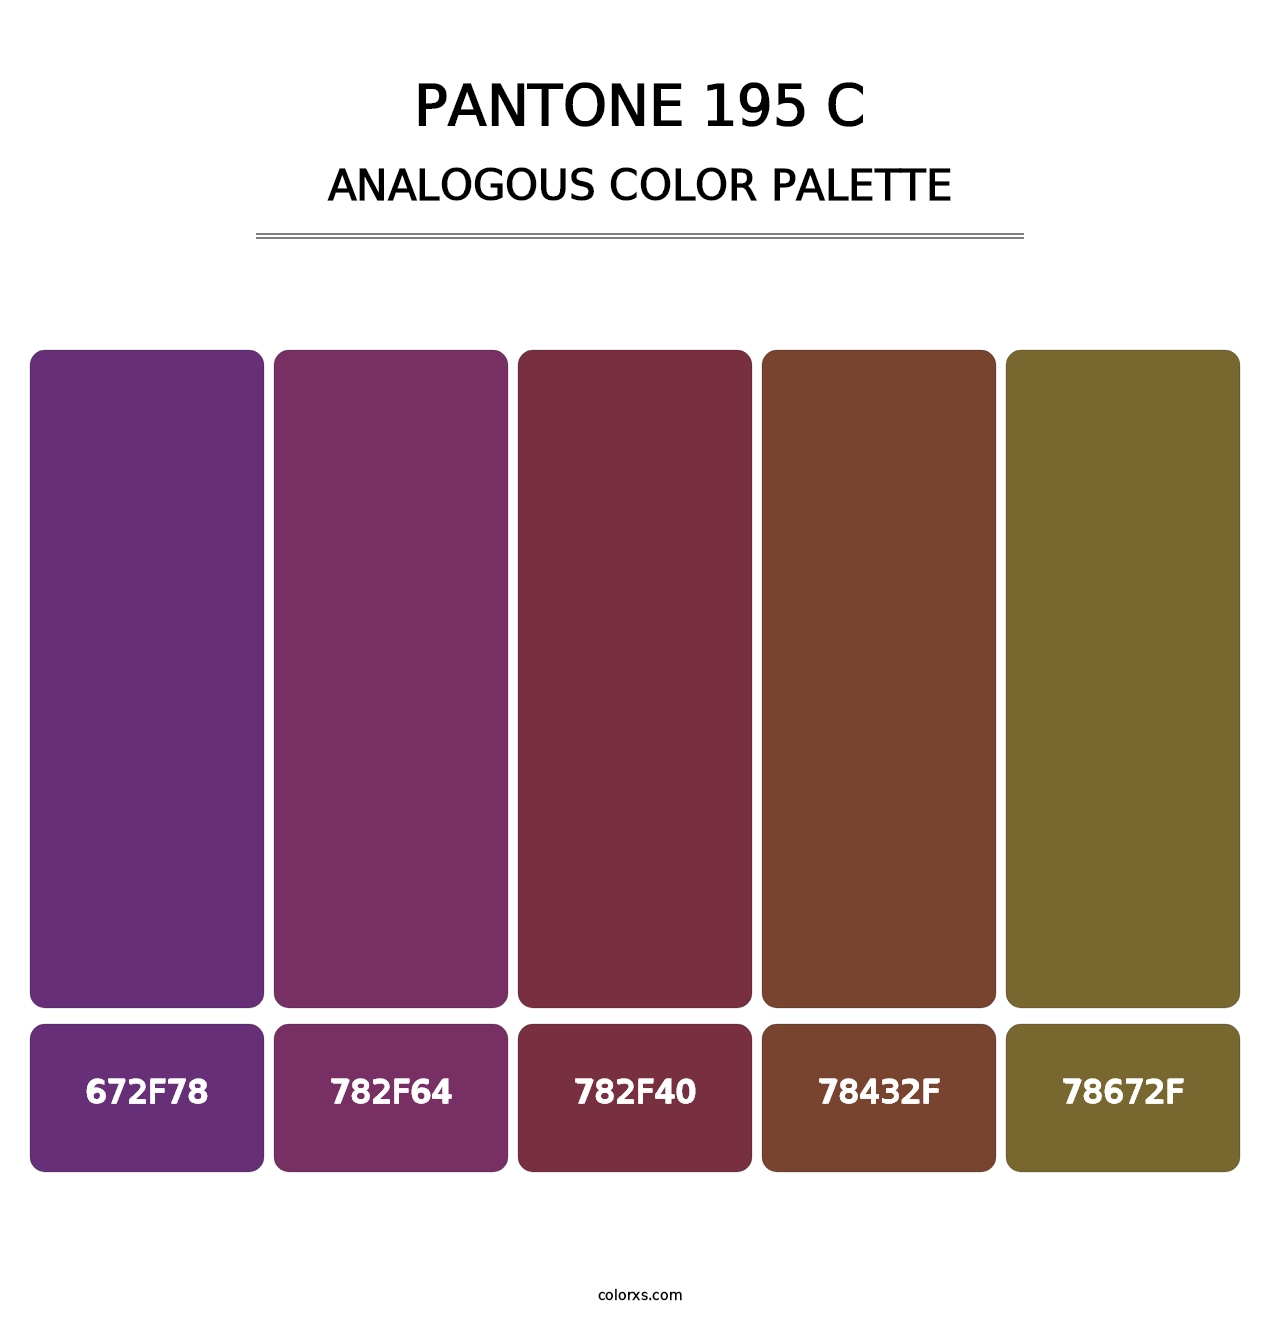 PANTONE 195 C - Analogous Color Palette